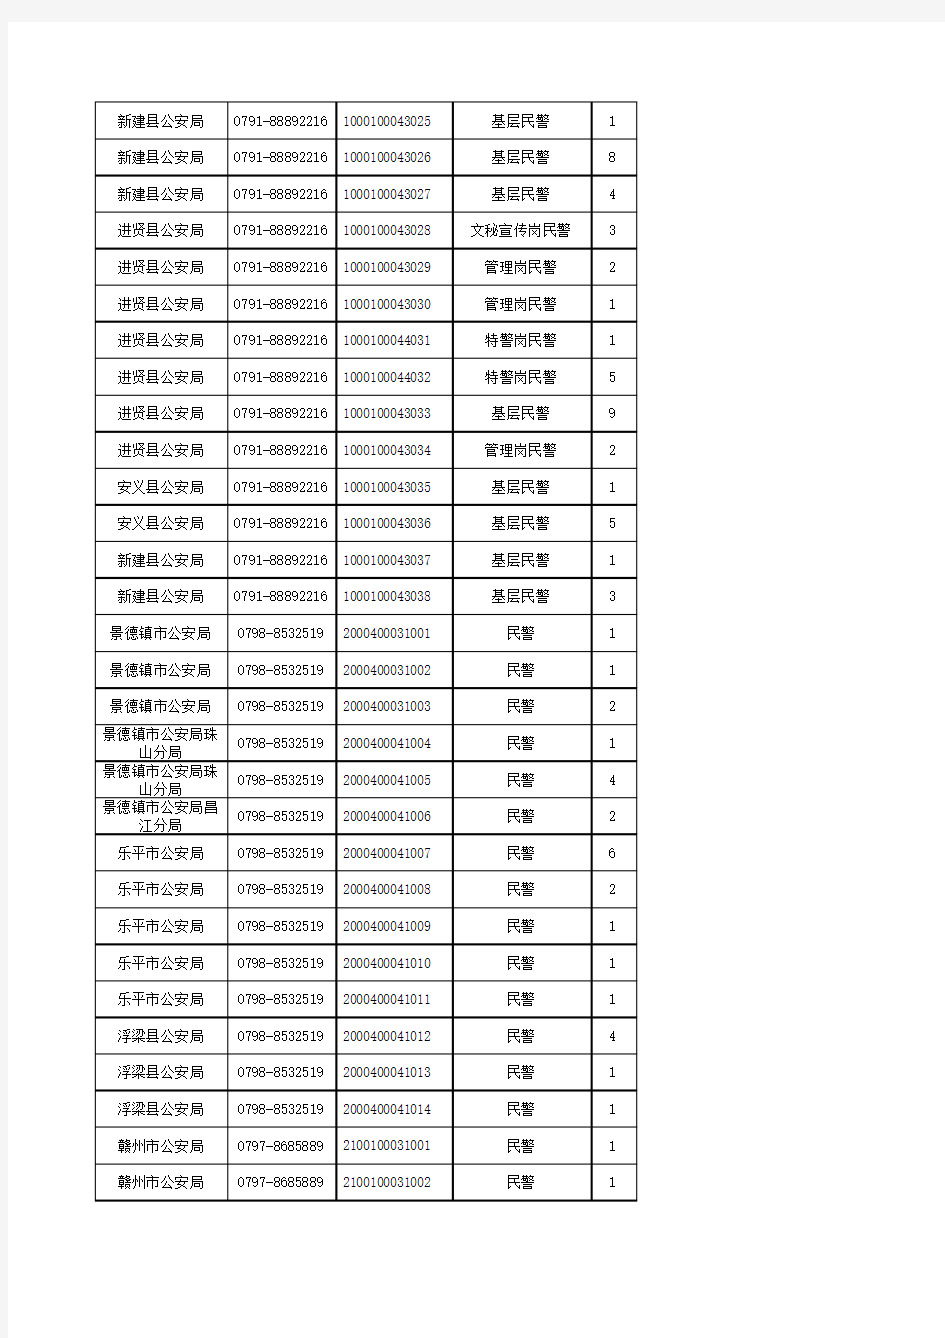 江西省公安机关2015年度统一考试录用人民警察职位表